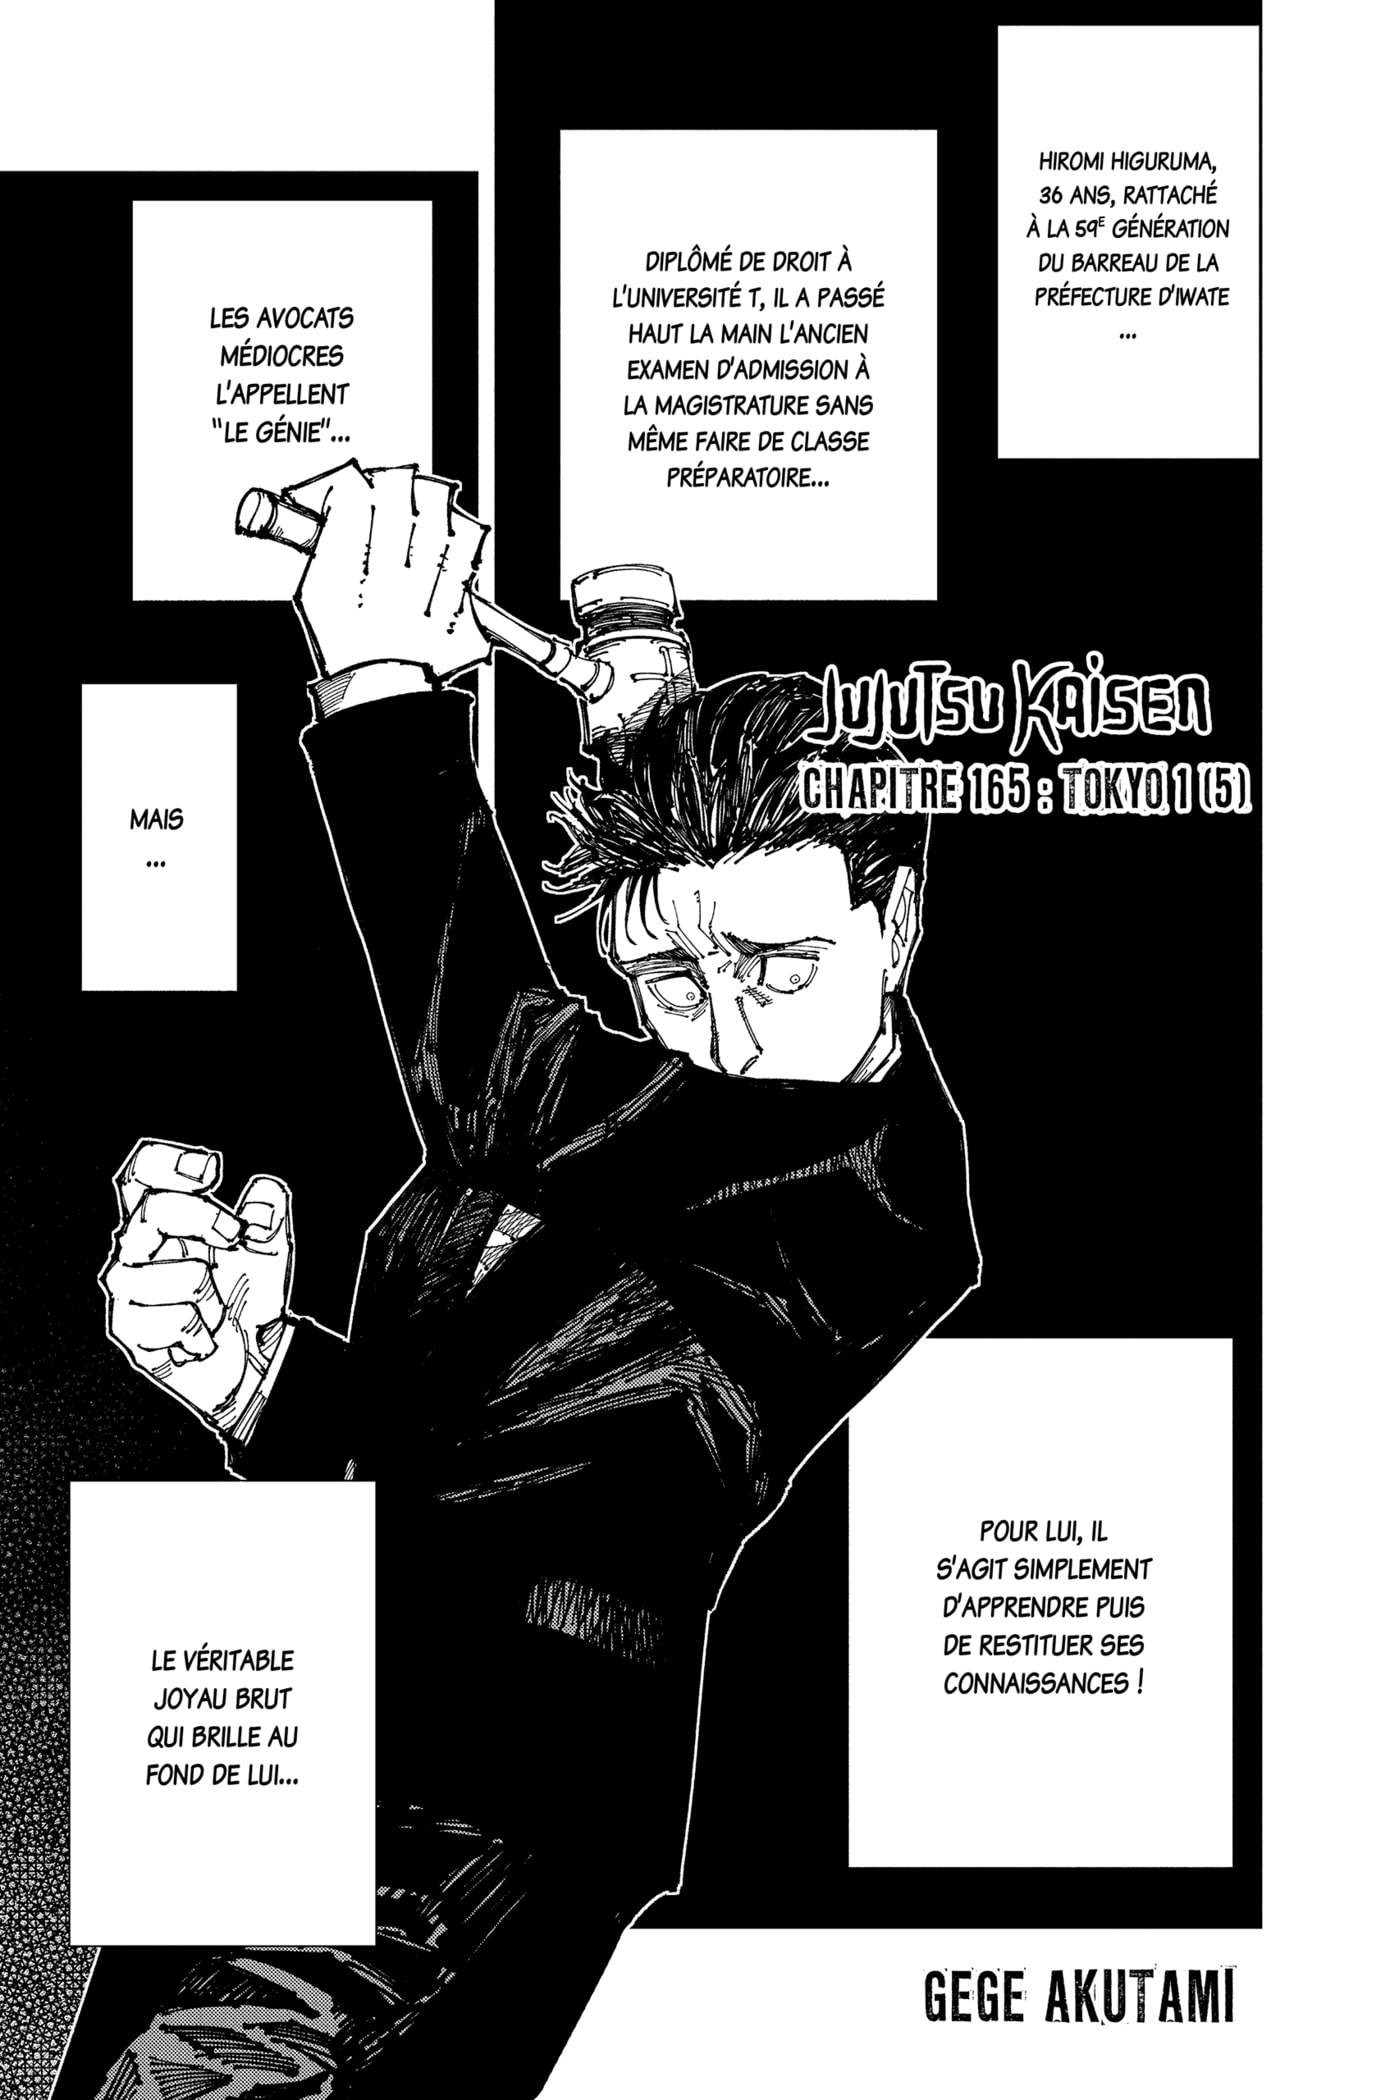 Jujutsu Kaisen: Chapter chapitre-165 - Page 1